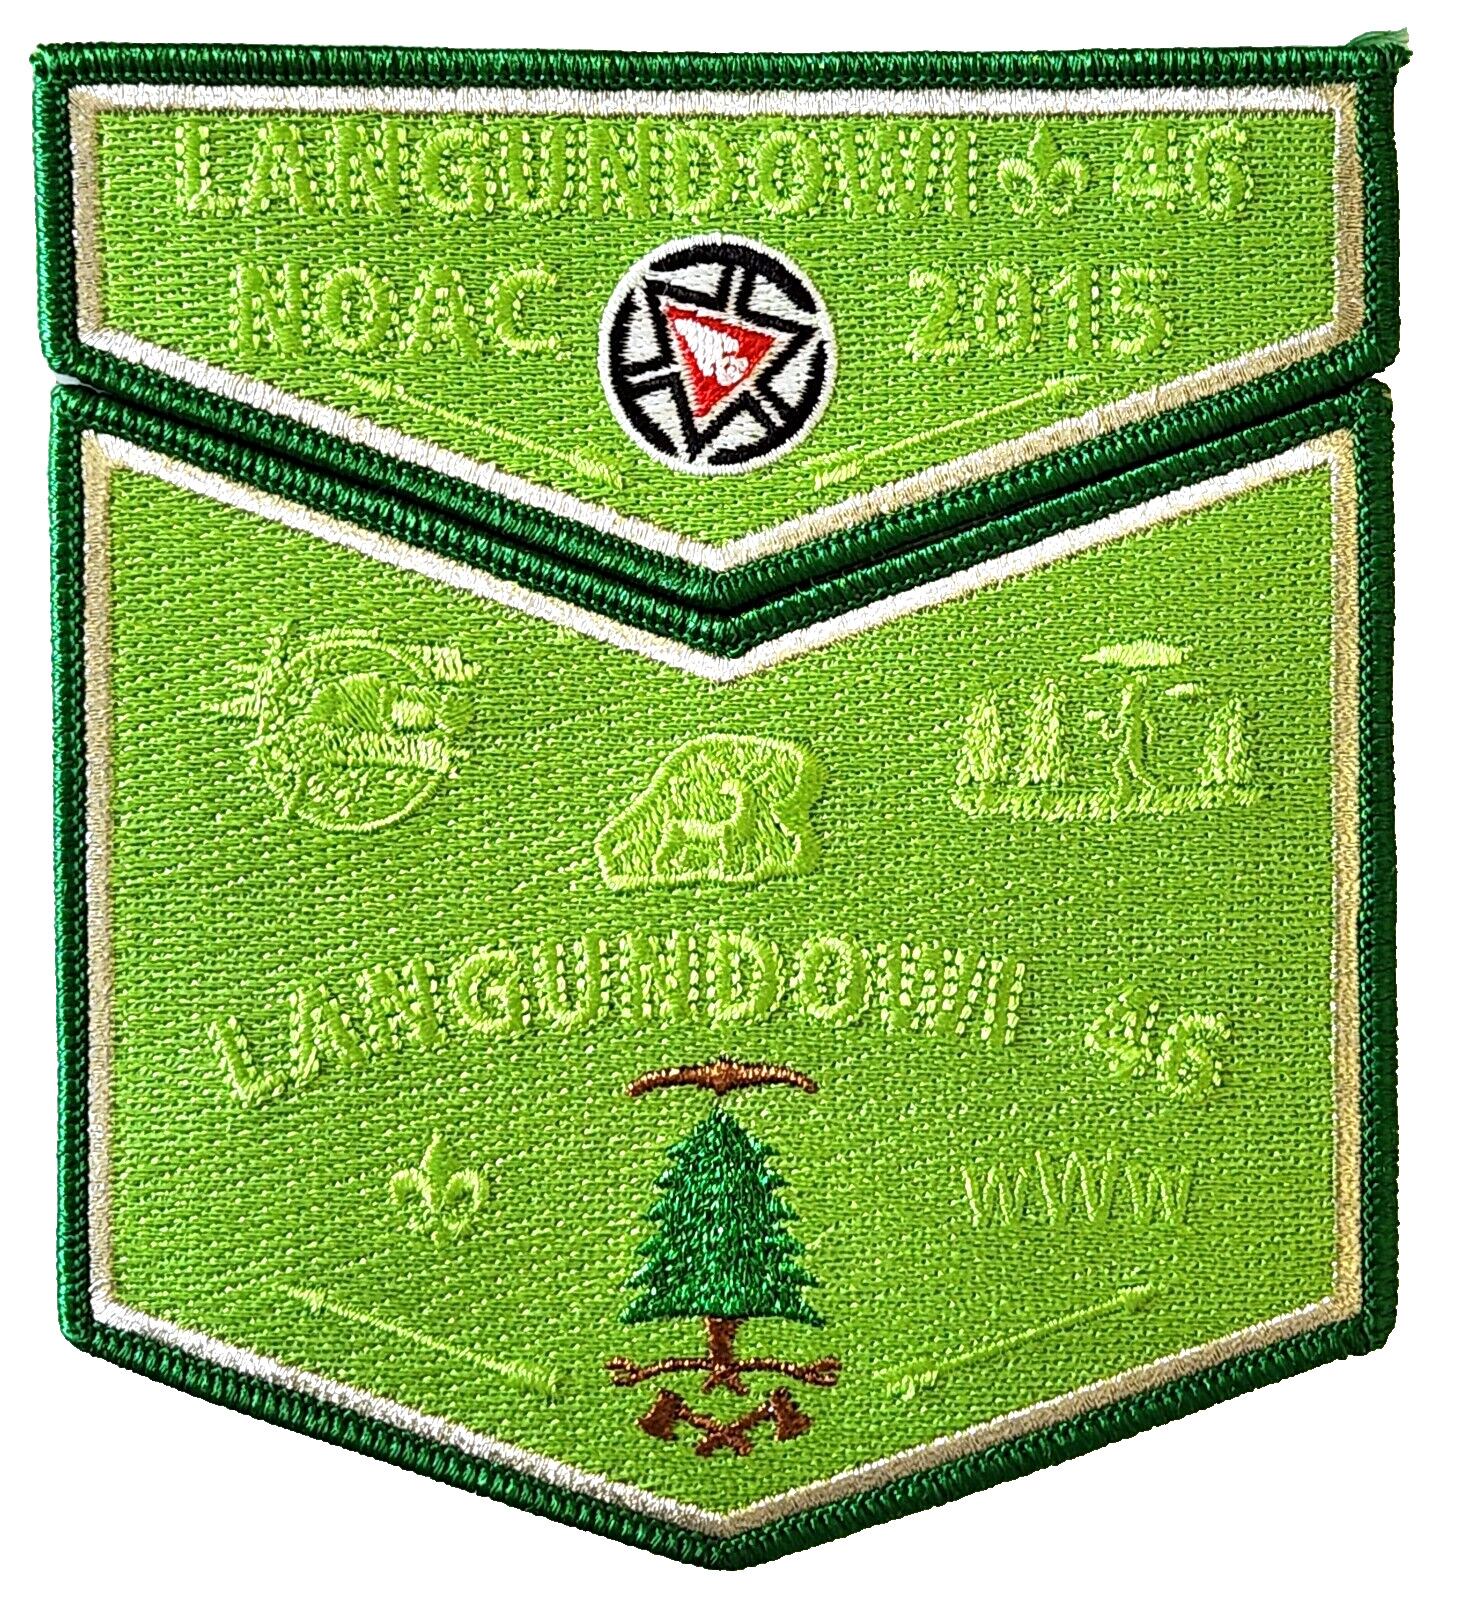 Lodge 46 Langundowi S16 + X8 2015 NOAC Centennial Pocket Flap Patch  OA  BSA